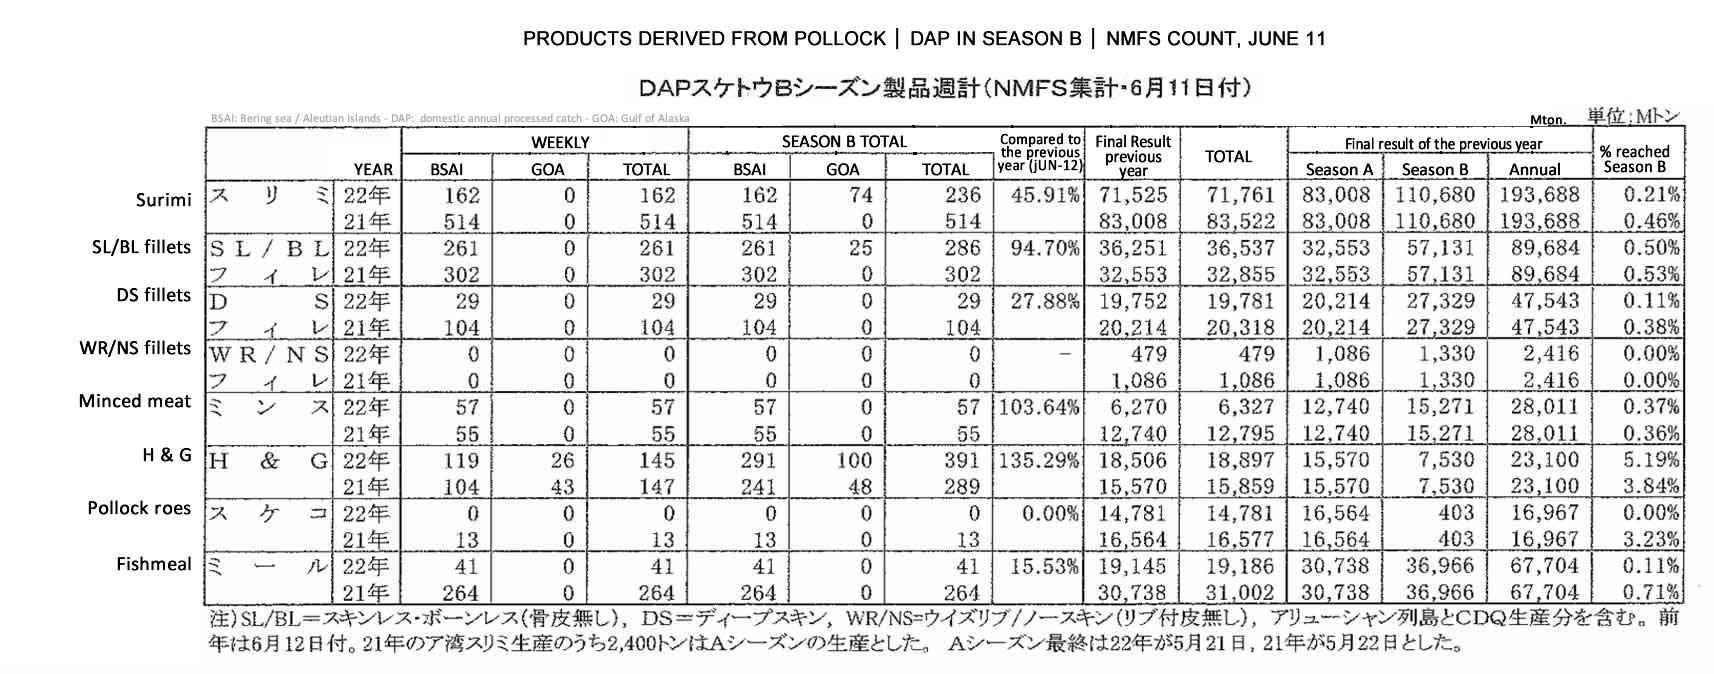 /2022061702ing-Productos derivados de abadejo DAP en la temporada A4 FIS seafood_media.jpg